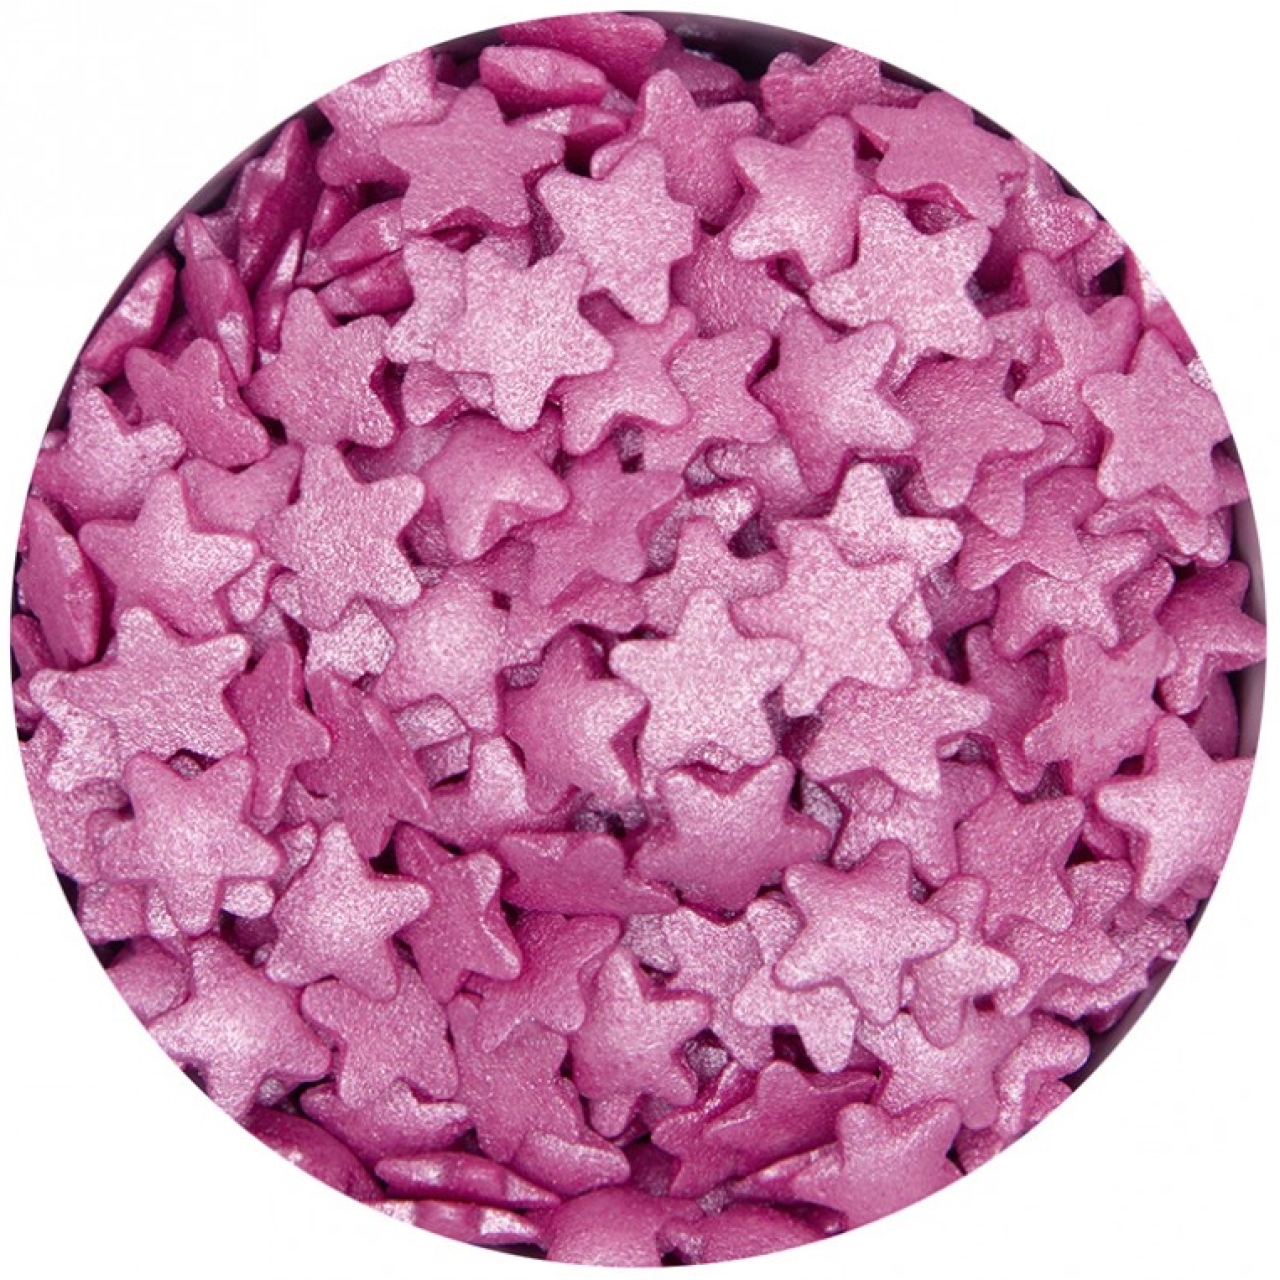 Streudekor "Sterne", Hot Pink, Azo-frei, 40 g, Städter